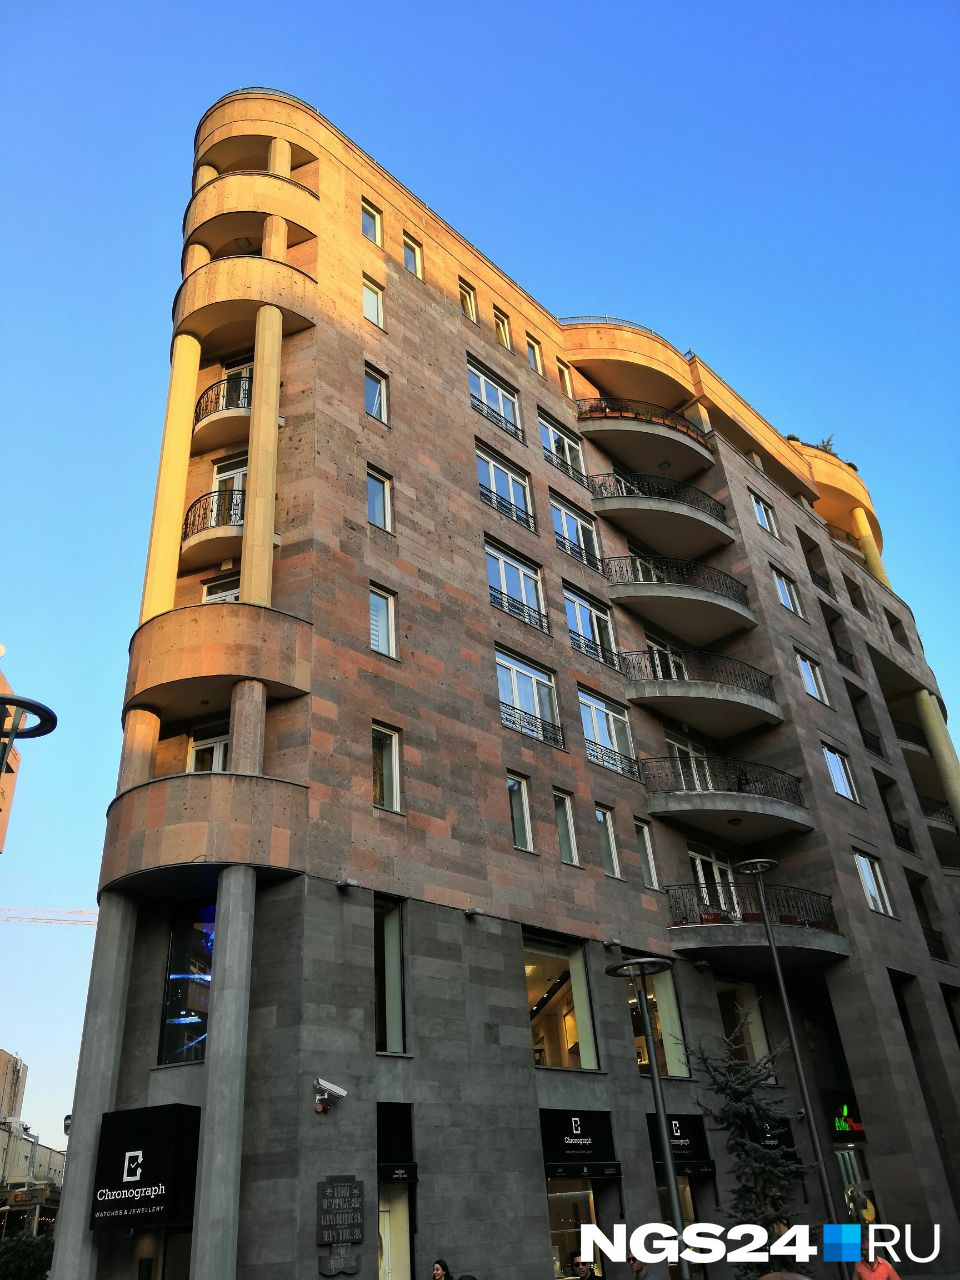 Цены на жилье в Армении сильно выросли